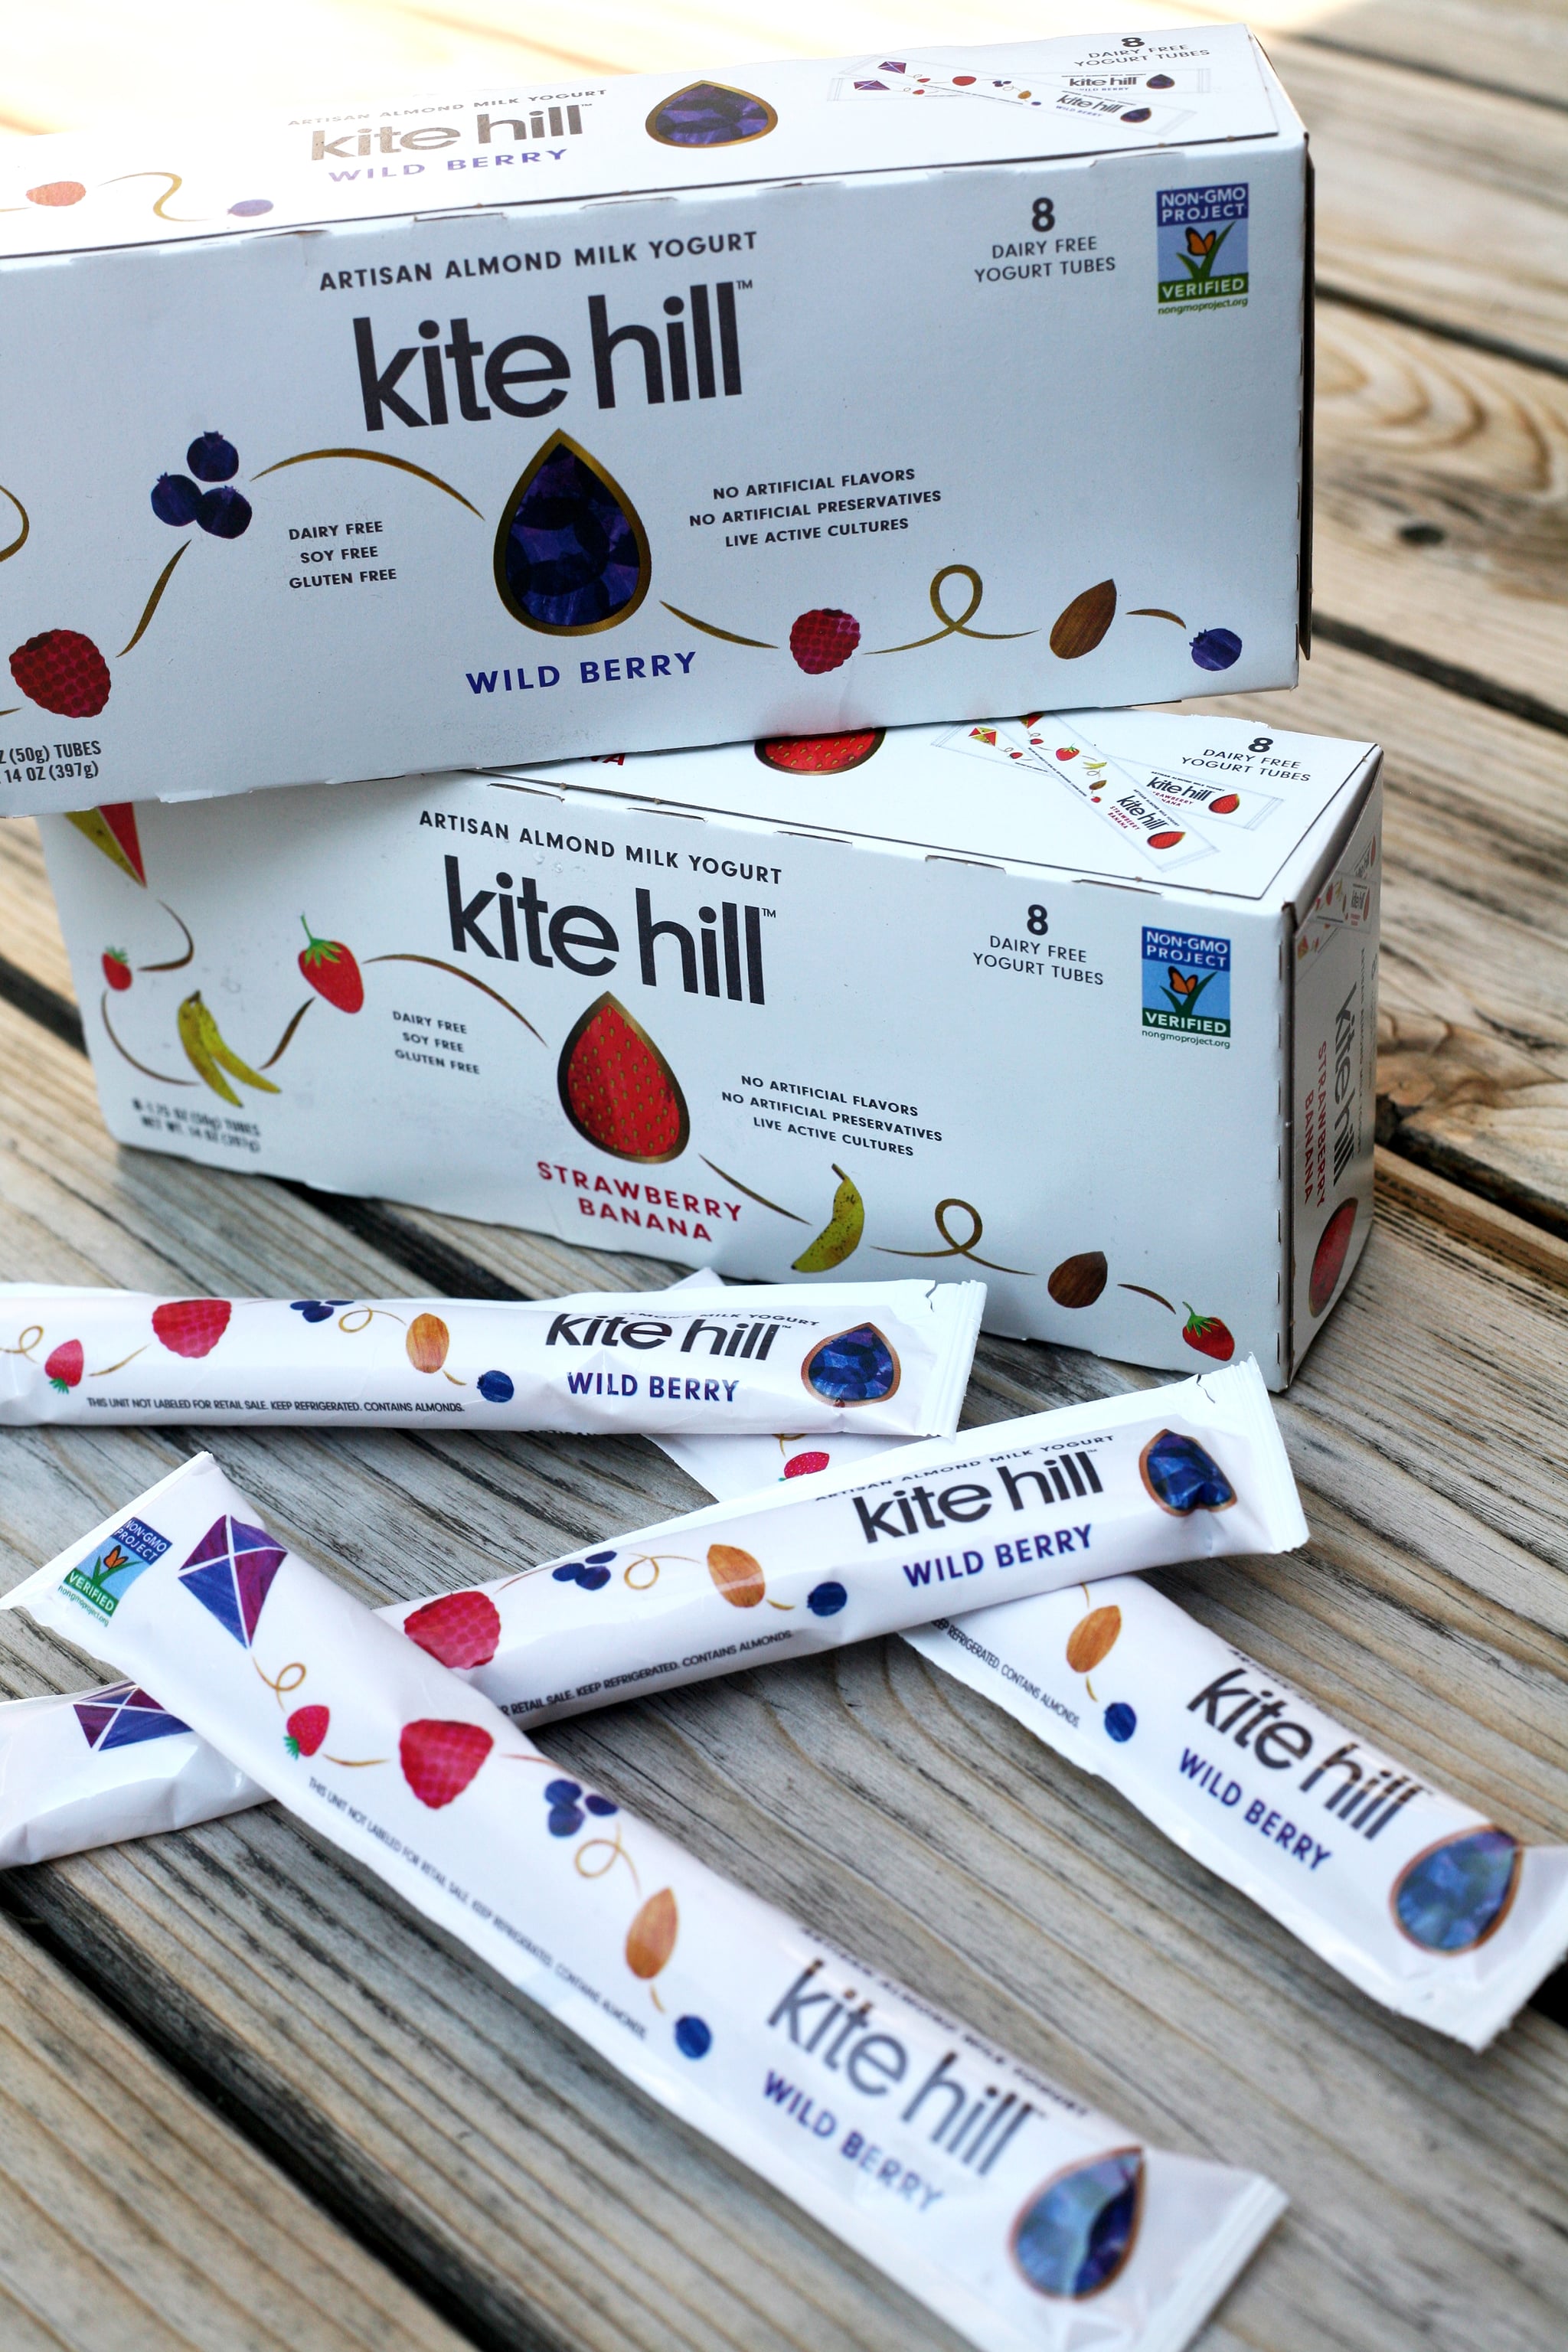 kite hill yogurt plain